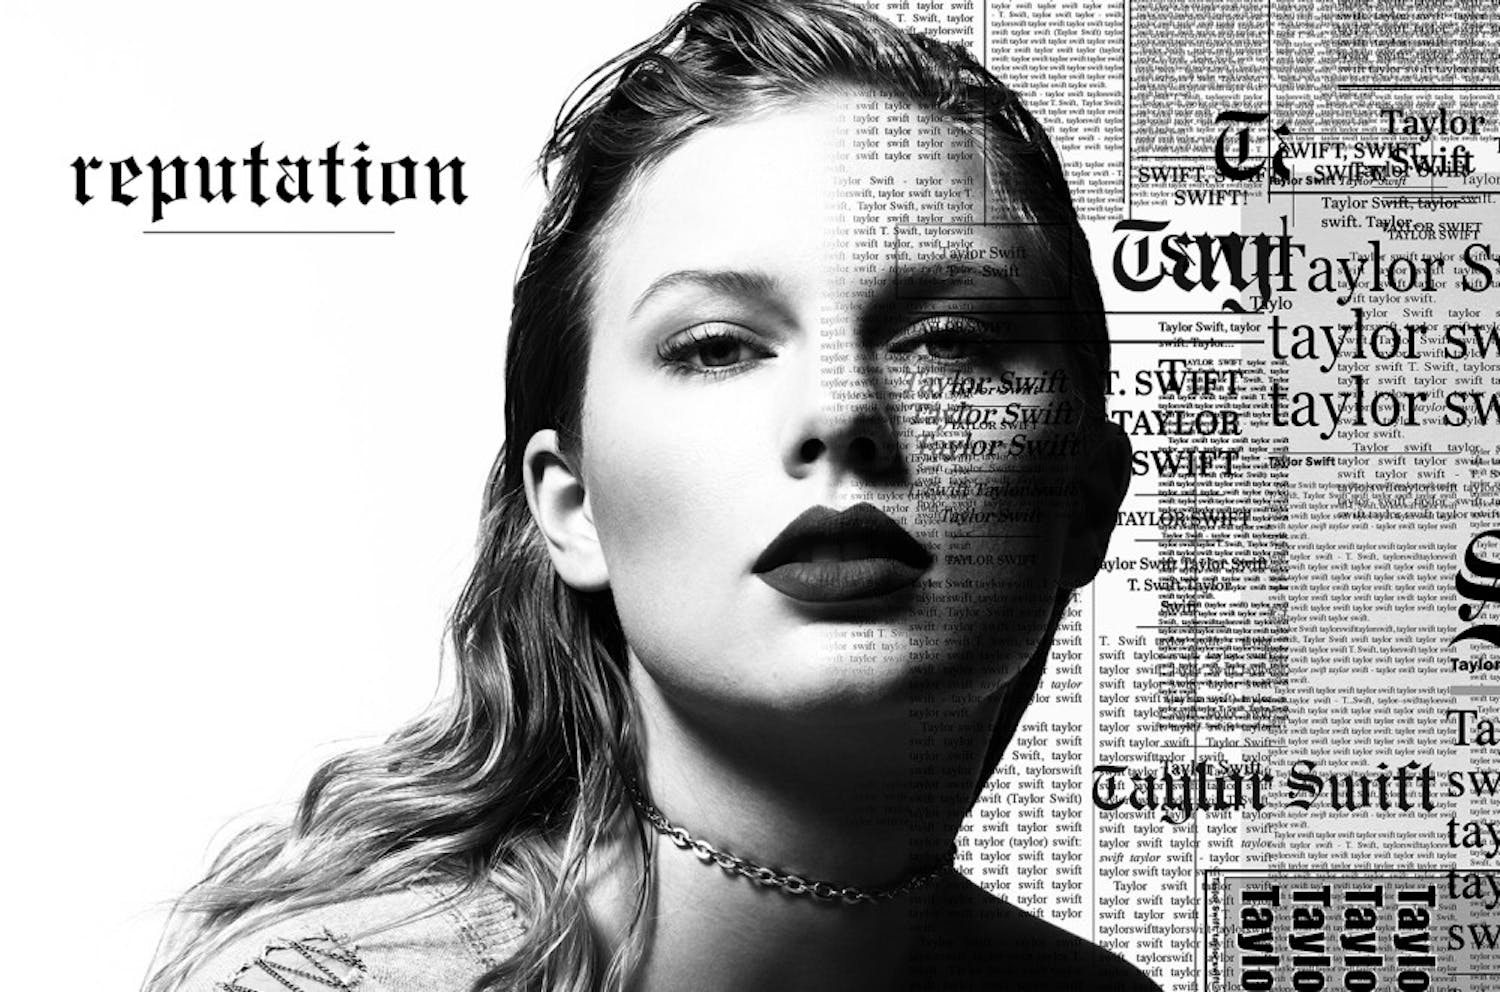 Taylor-Swift-reputation-ART-2017-billboard-1548